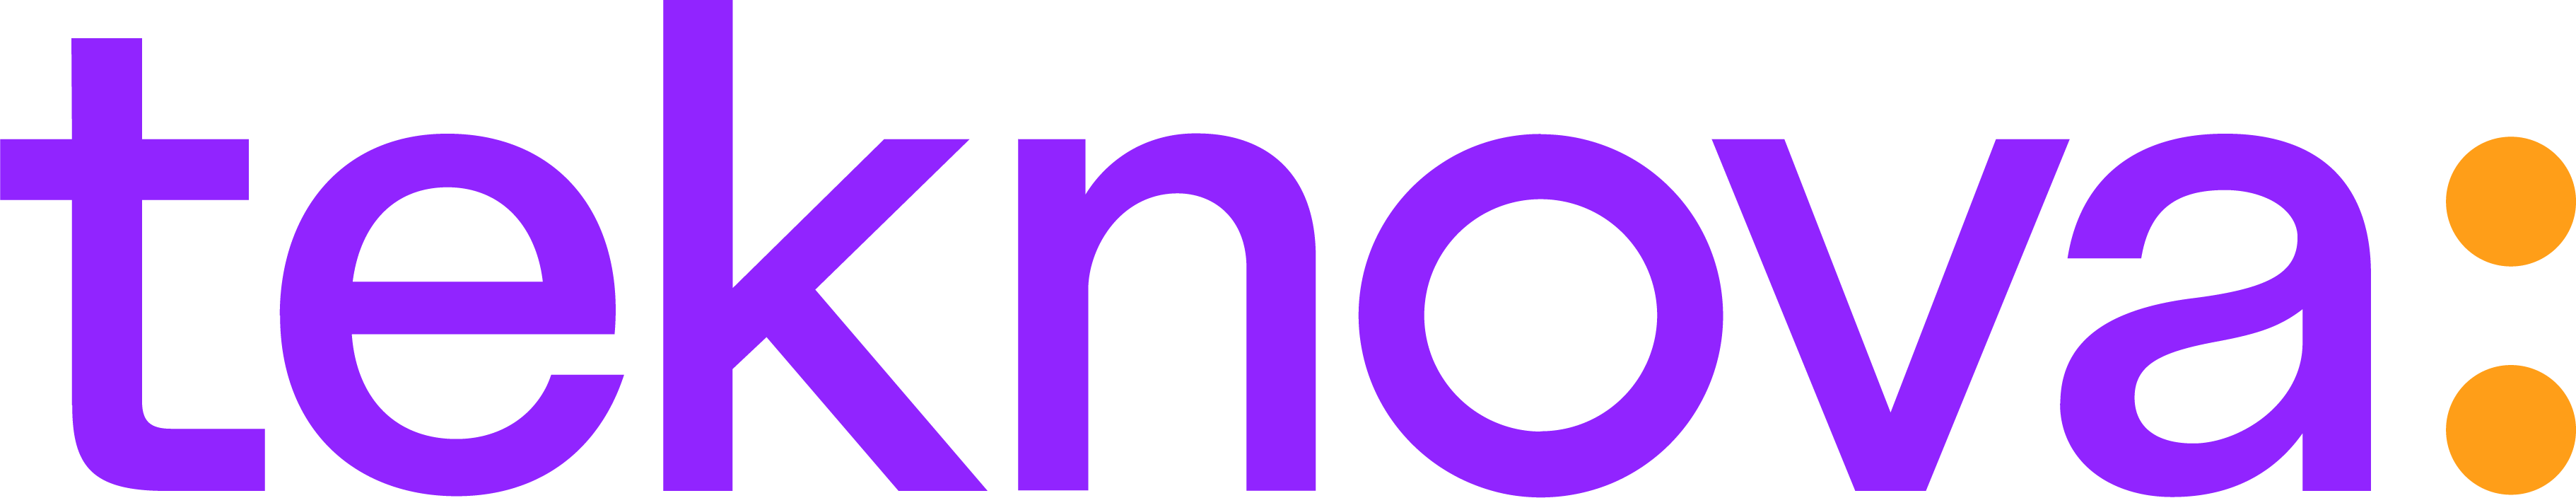 teknova-logo